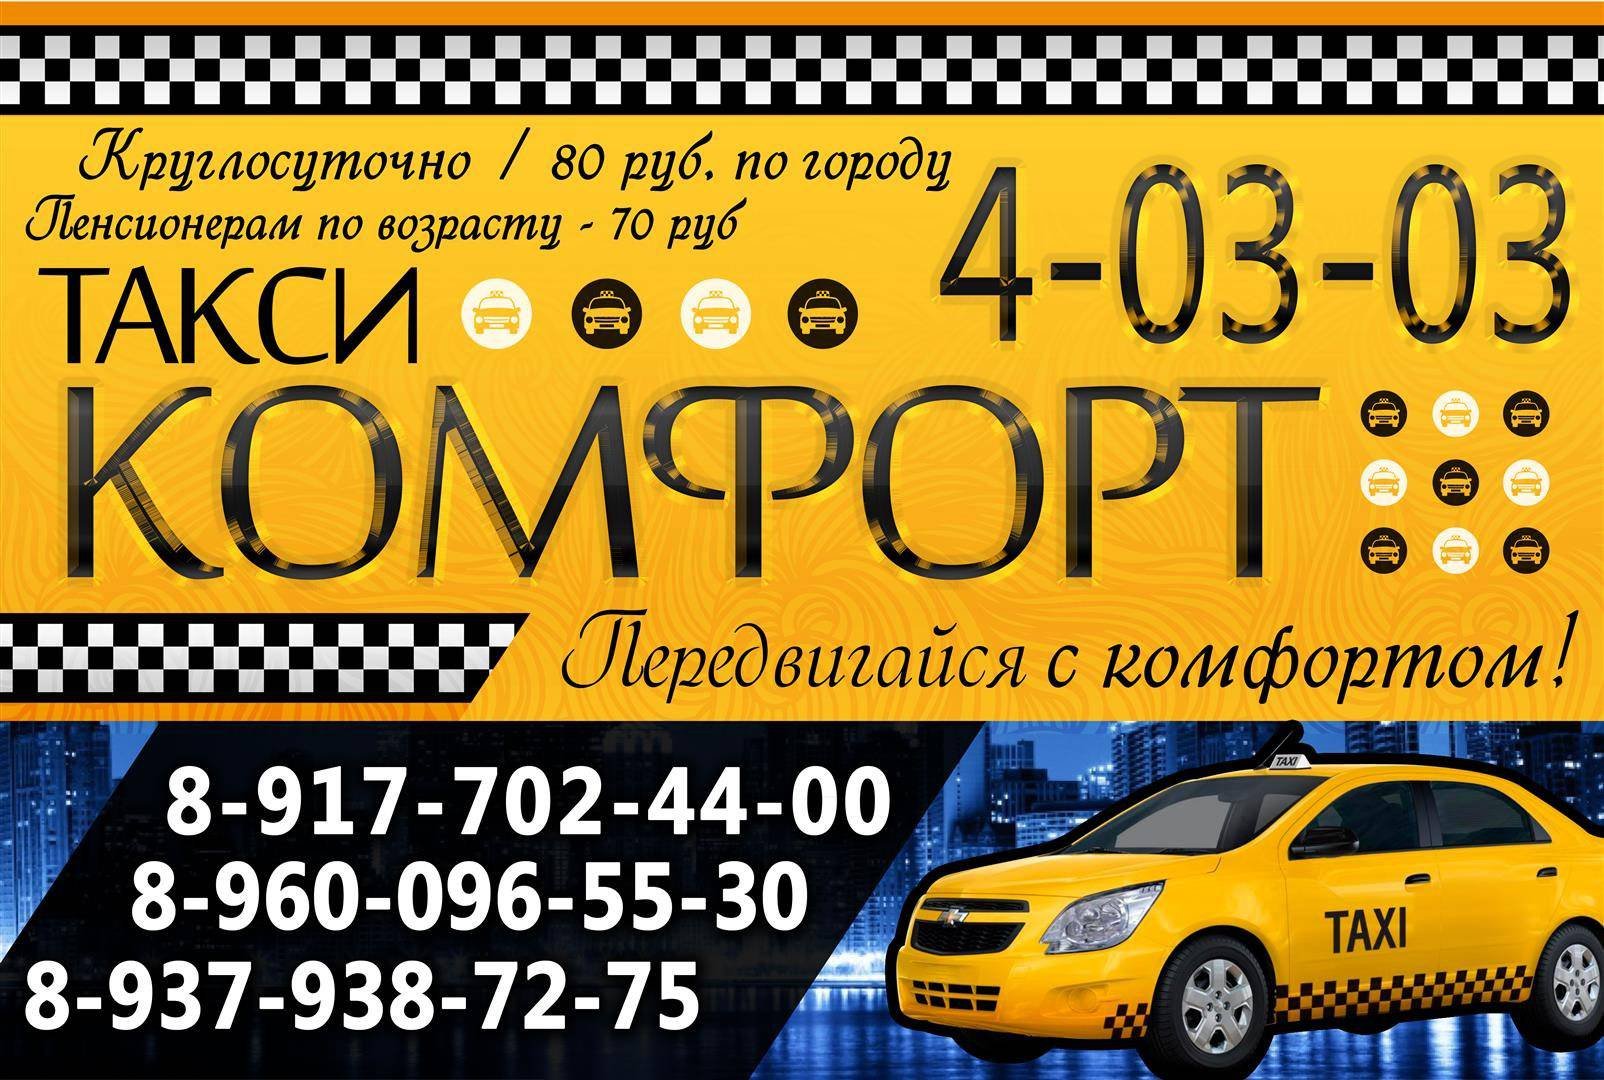 Тверское такси телефоны. Комфорт такси такси. Баннер такси. Таксопарк комфорт. Реклама такси комфорт.